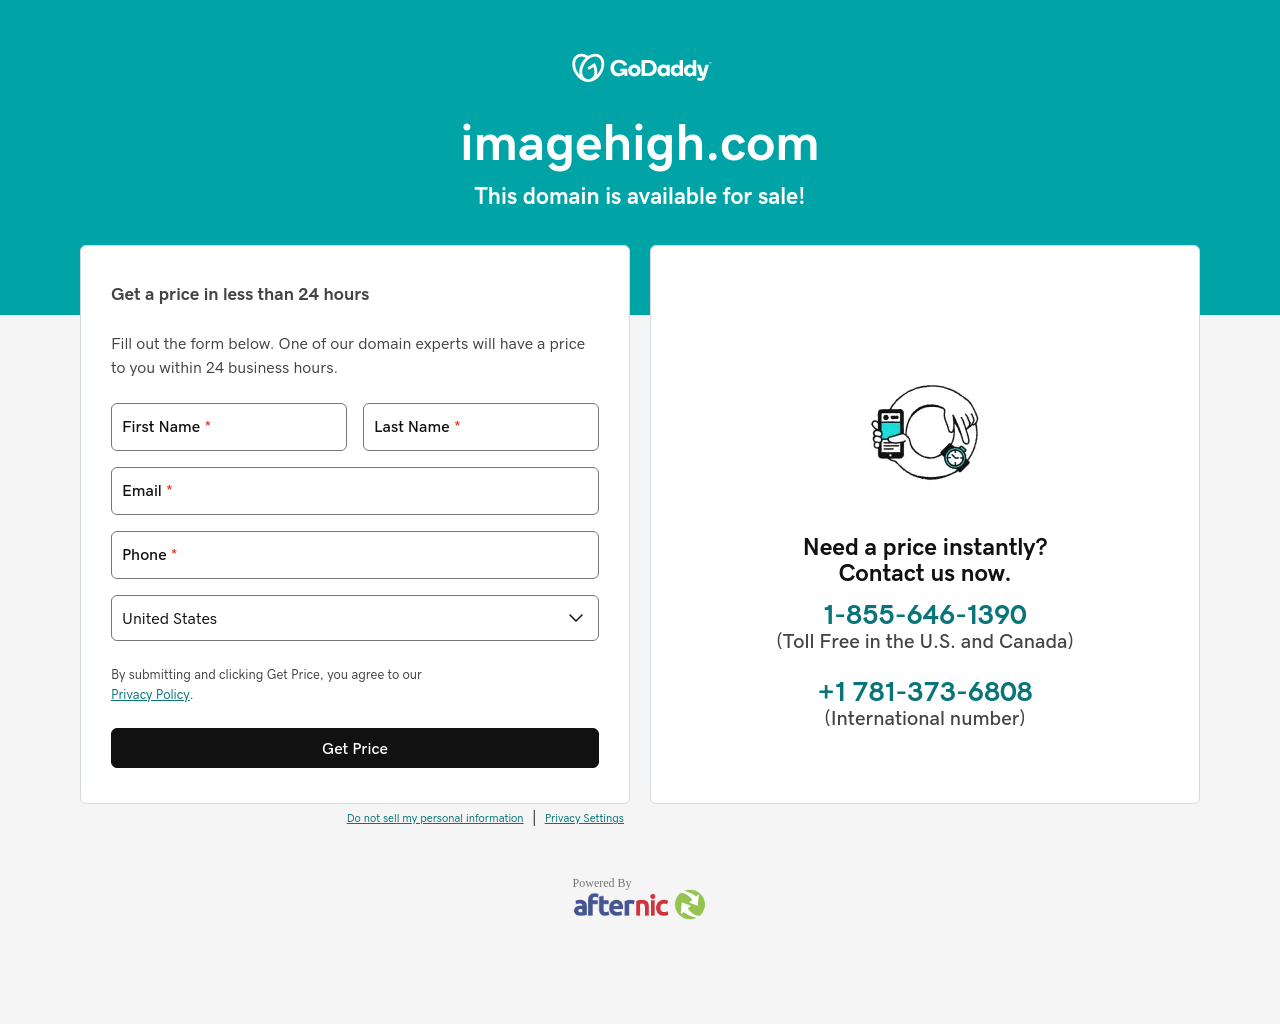 imagehigh.com